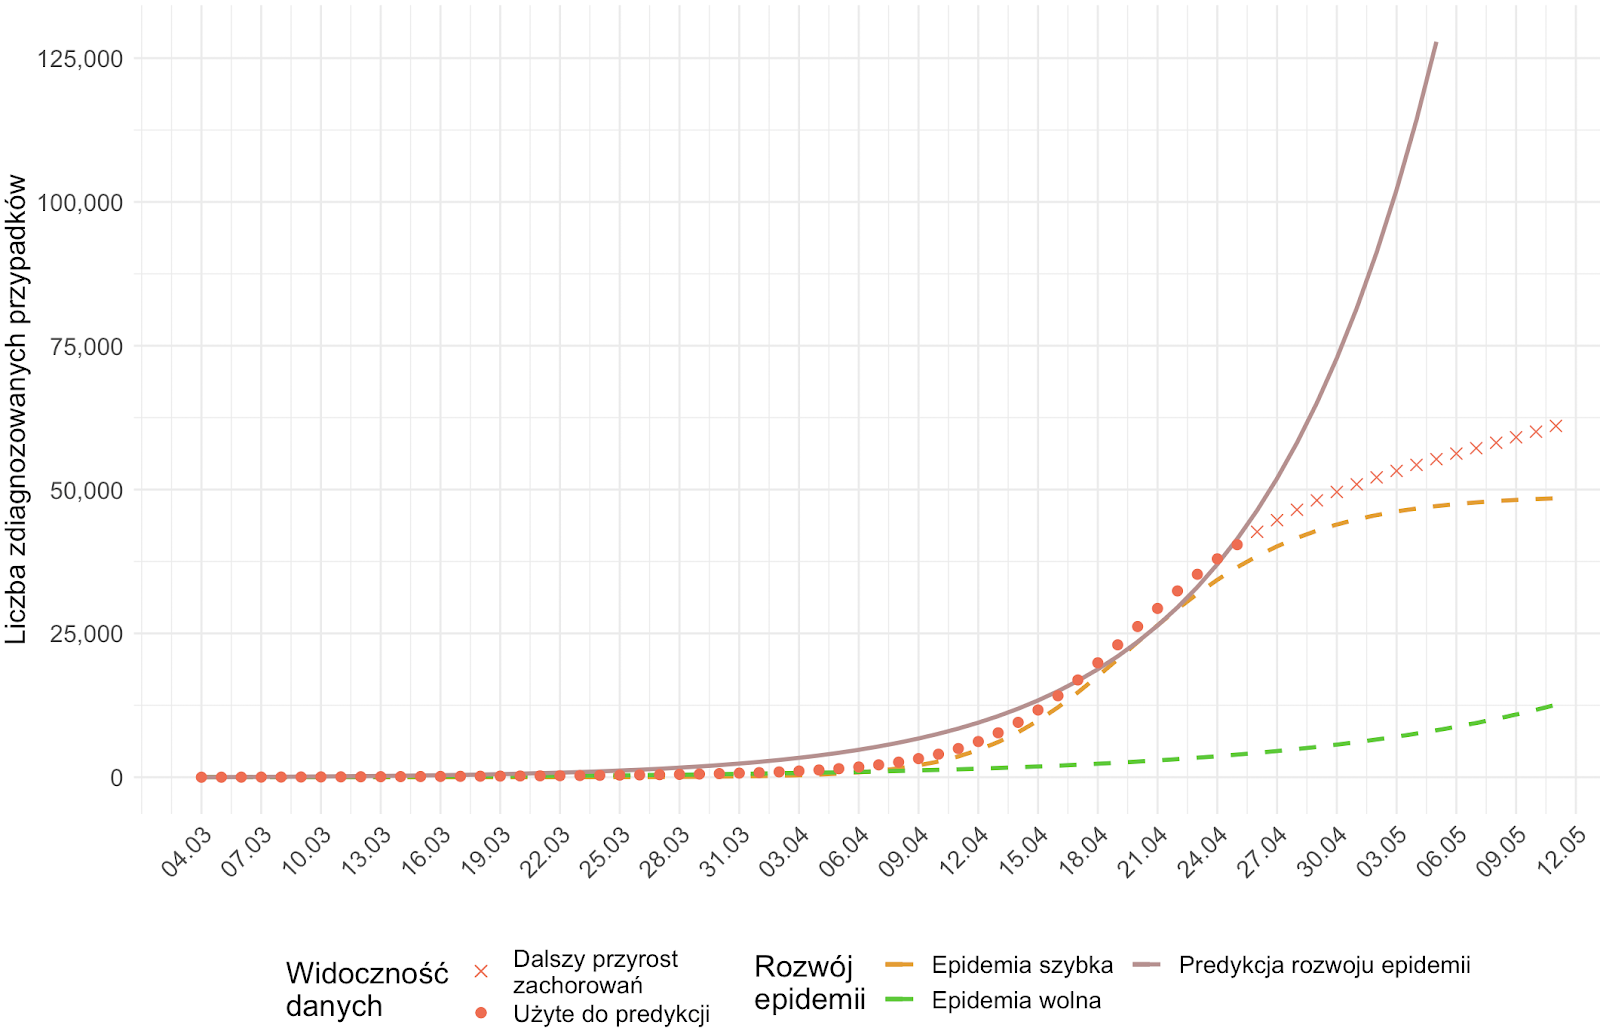 <b>Wpływ hipotetycznych "epidemii dwóch prędkości" na obserwowane dane oraz predykcje.</b> Na wykresie przedstawiono rozwój epidemii w dwóch hipotetycznych populacjach (linie przerywane): Populacja 1 (np. Szpitale i DPSy): <i>N = 50 000; R<sub>0</sub> = 4</i> - "Szybka" epidemia; Populacja 2 (populacja ogólna): <i>N = 35 950 000; R<sub>0</sub> = 1.7</i> - "Powolna" epidemia. Czerwonymi kropkami oznaczono łączną hipotetyczną, podobną do przebiegu epidemii w Polsce, liczbę rozpoznań, dla których dokonano predykcji rozwoju epidemii. Czerwone krzyżyki wskazują dalszy rozwój liczby diagnozowanych przypadków. Linia ciągła prezentuje predykcję opartą na wskazanym zbiorze obserwacji. Niekontrolowana epidemia w Populacji 1 jest w fazie szybkiego wzrostu (<i>R<sub>0</sub> = 4</i>) i osiąga szczyt w początkach maja. Dynamika Populacji 2 jest wolniejsza, w związku z tym w obserwowanej łącznej liczbie rozpoznań dominują przypadki z Populacji 1. Ciągła linia pokazuje, że predykcja w przypadku modelowania obu populacji łącznie dla danych zaobserwowanych do 25.04 jest zbyt pesymistyczna w odniesieniu do dalszego rozwoju epidemii "dwóch prędkości."